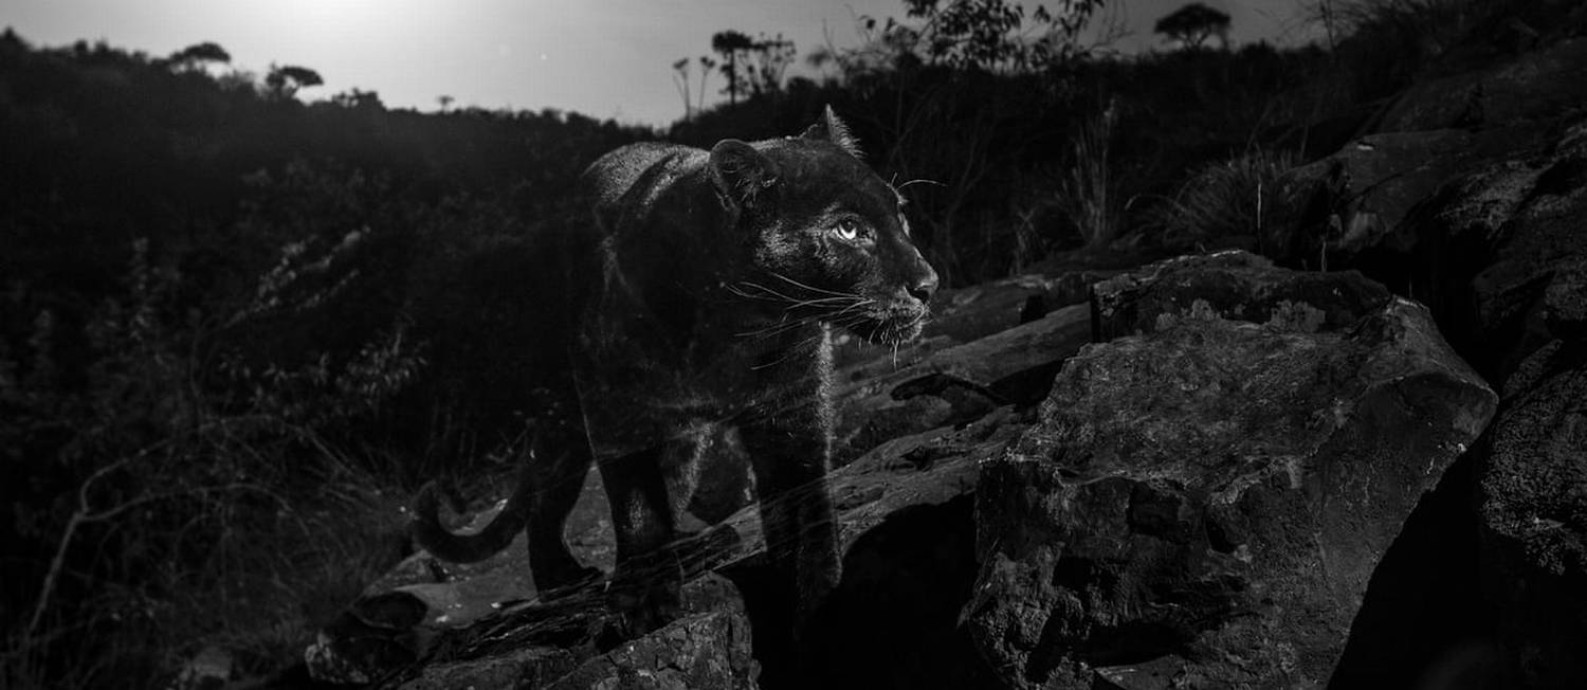 Leopardo negro foi registrado por Will Burrard-Lucas Foto: Burrard-Lucas Photography/Camtraptions